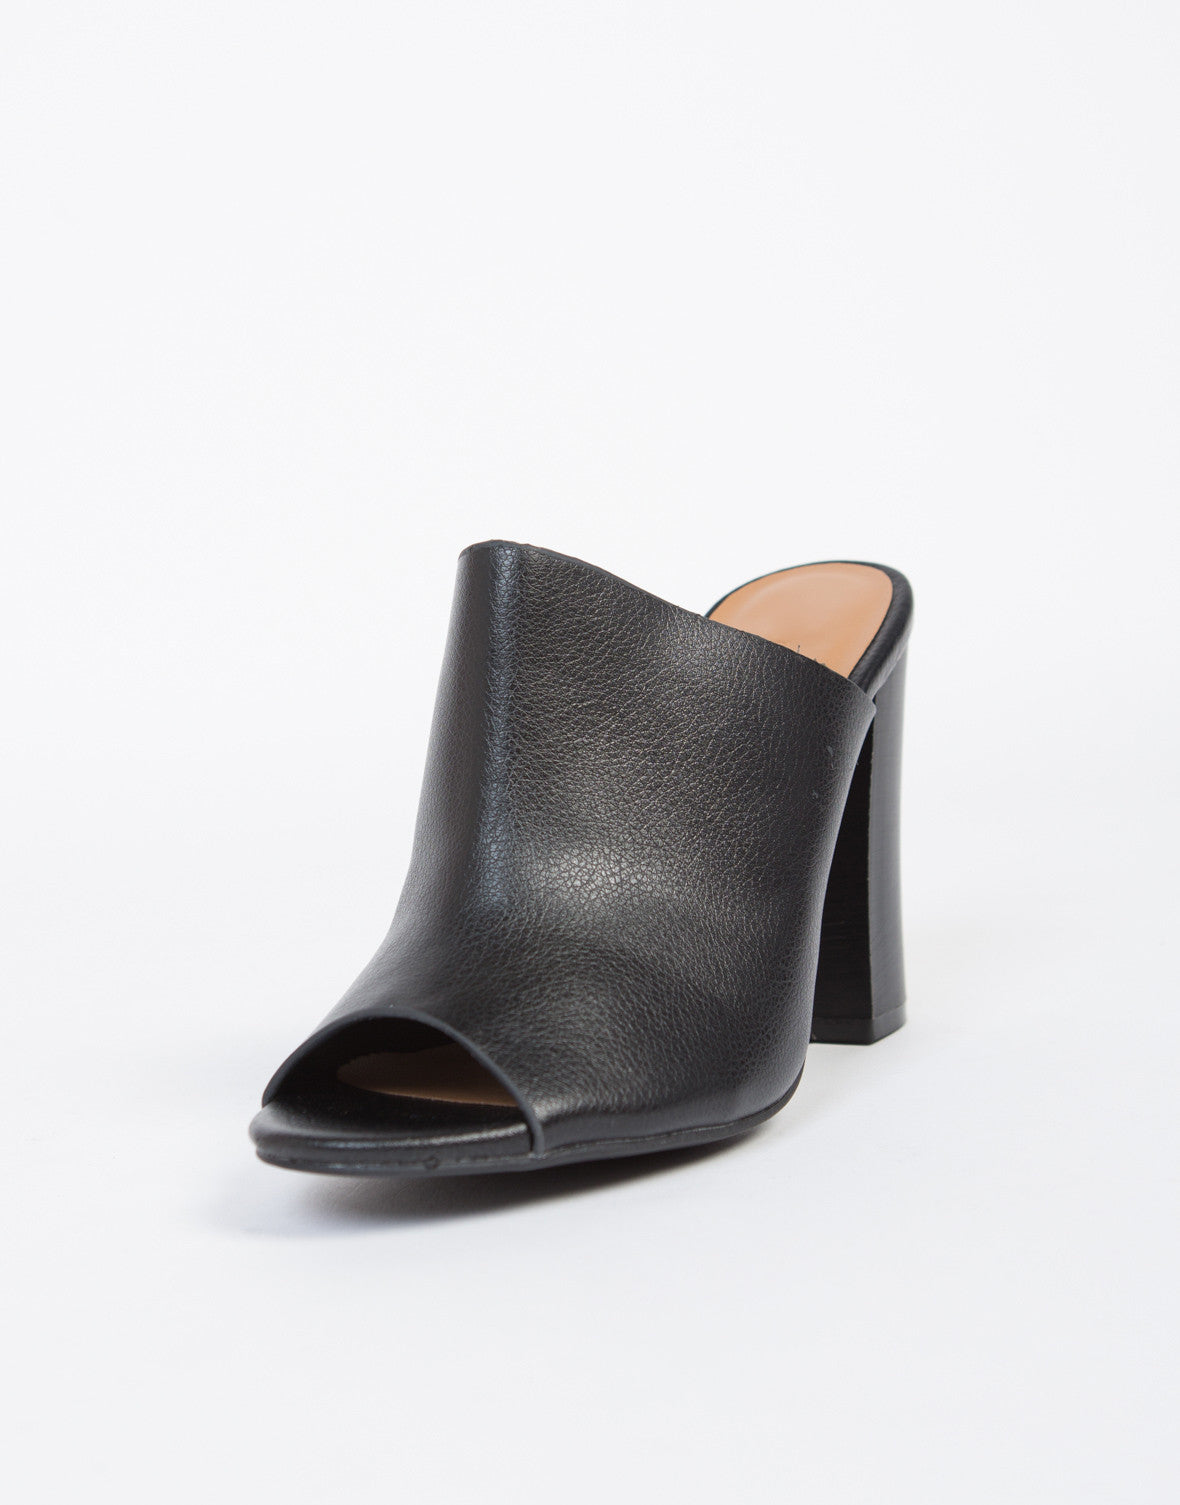 Mule Peep Toe Heels - Black Leather Peep Toe Heels – 2020AVE